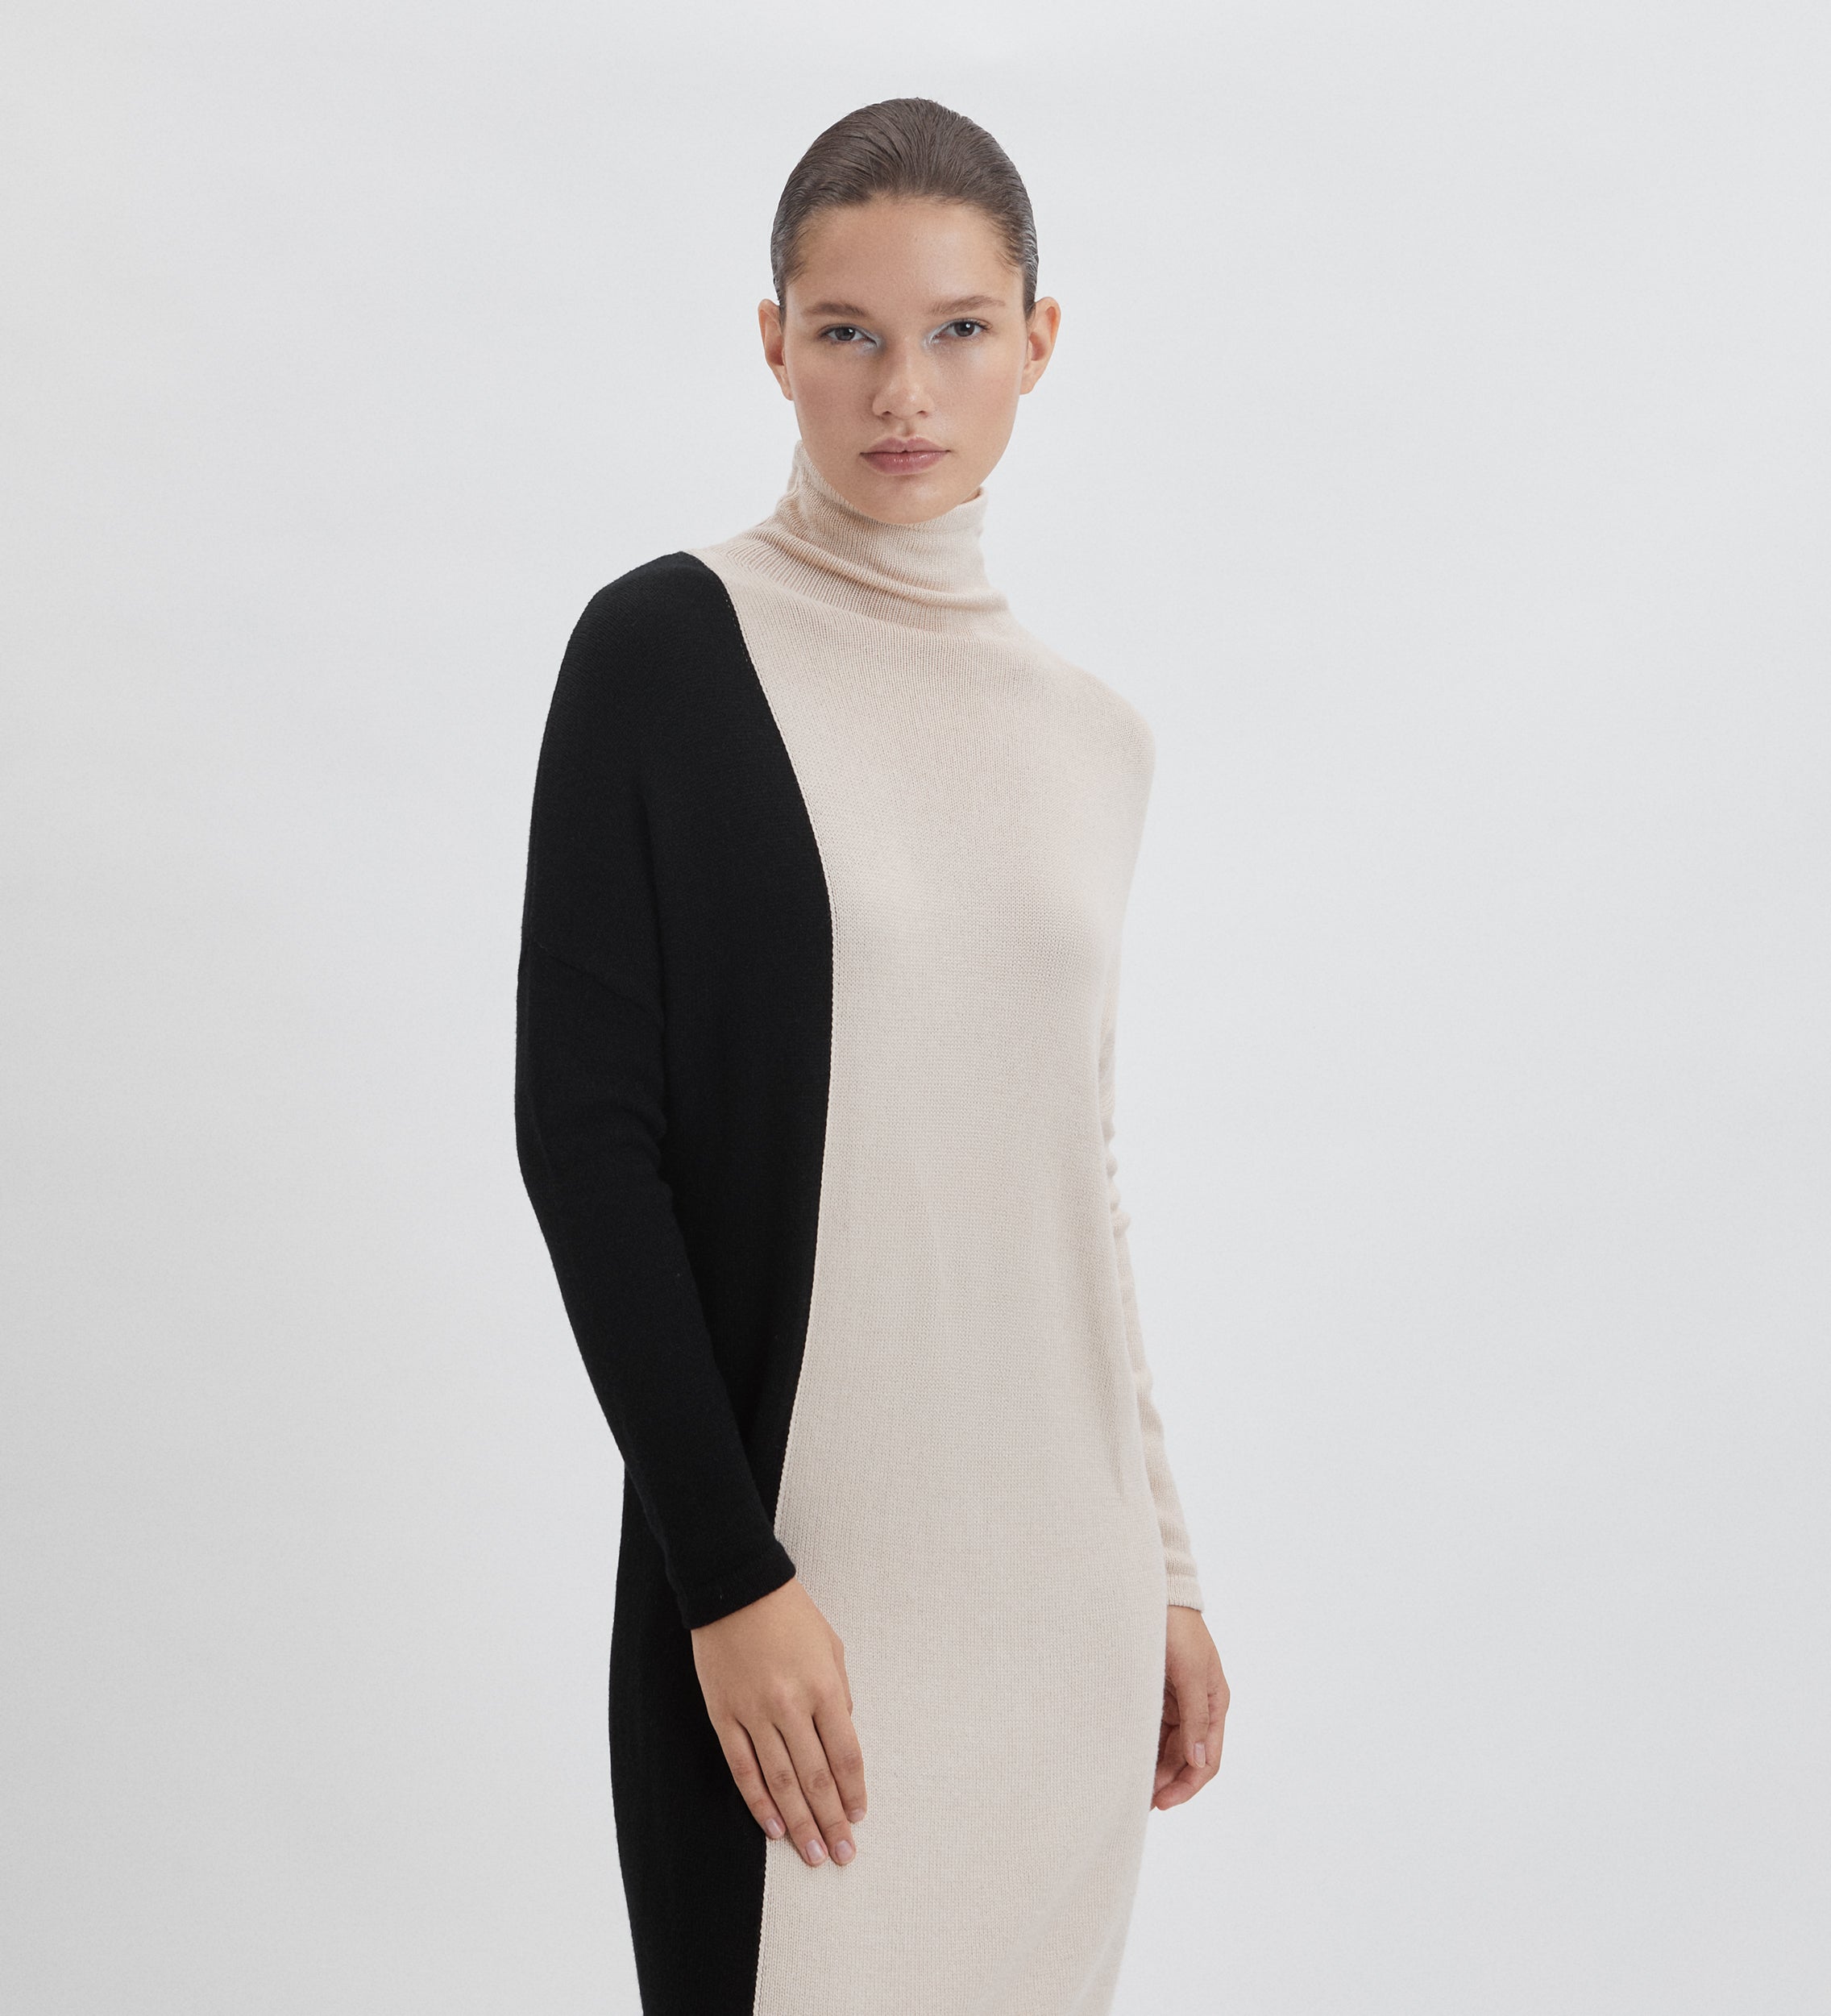 Two-tone knit dress